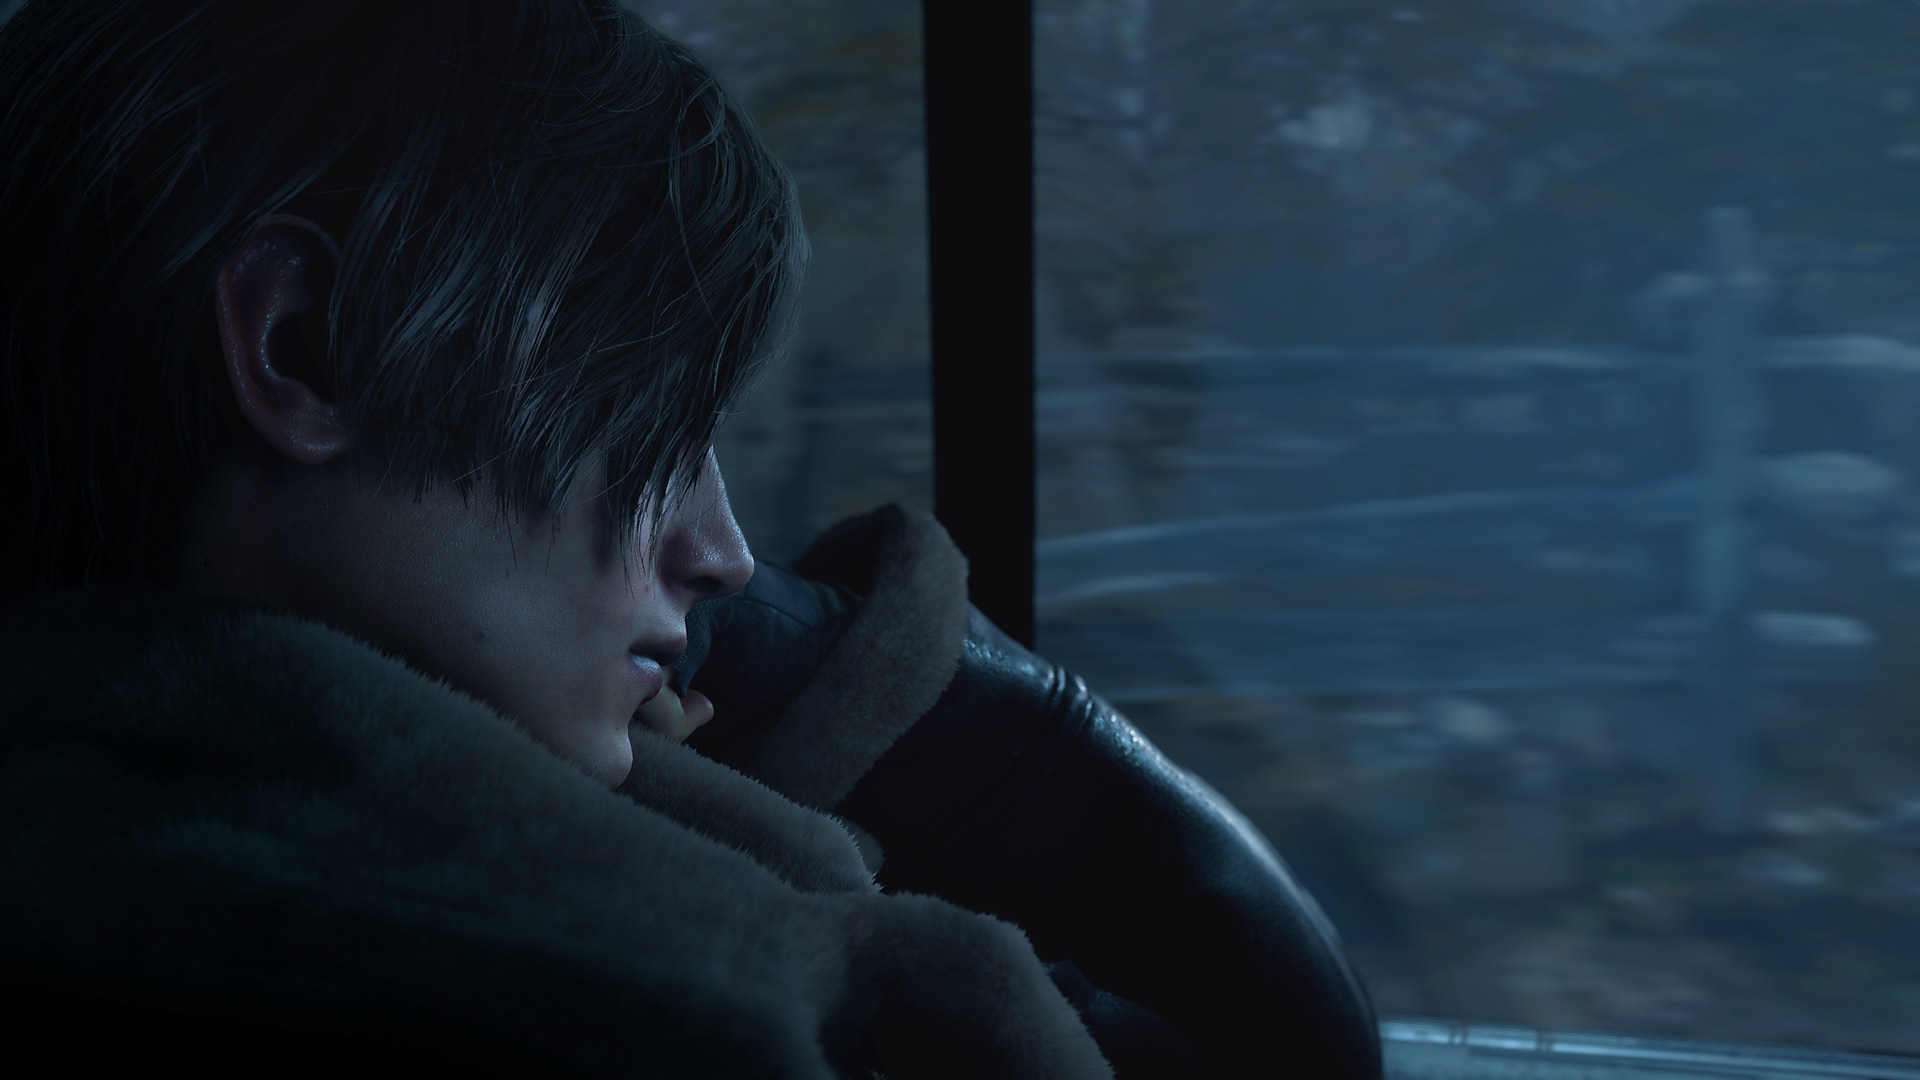 Resident Evil 4 – skärmbild på Leon Kennedy i baksätet på en bil.